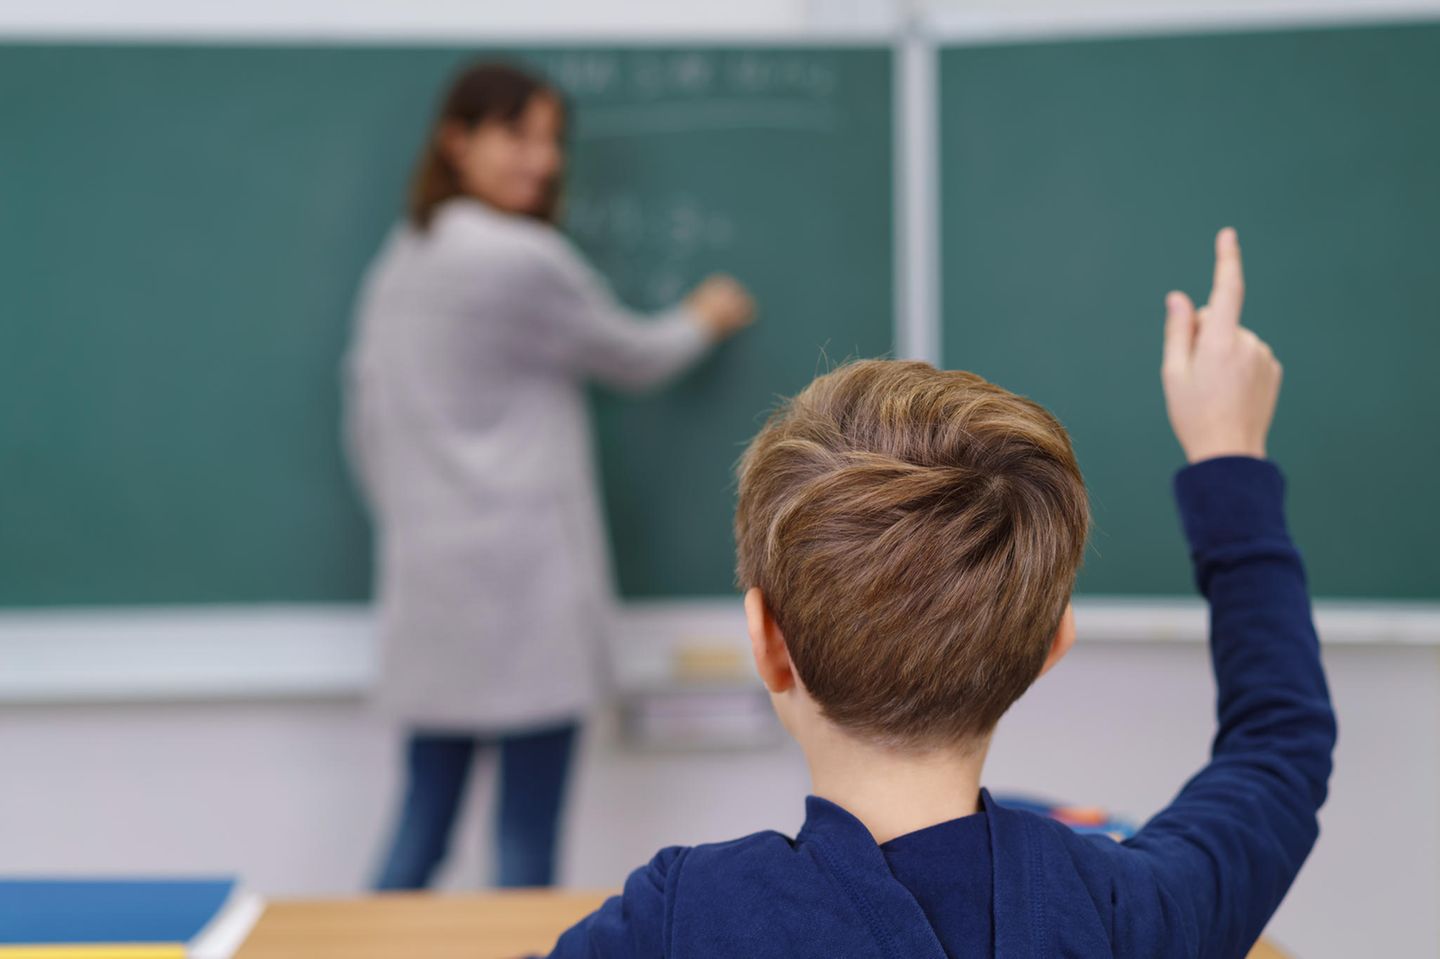 Ein Junge hebt in einem Klassenzimmer die Hand.